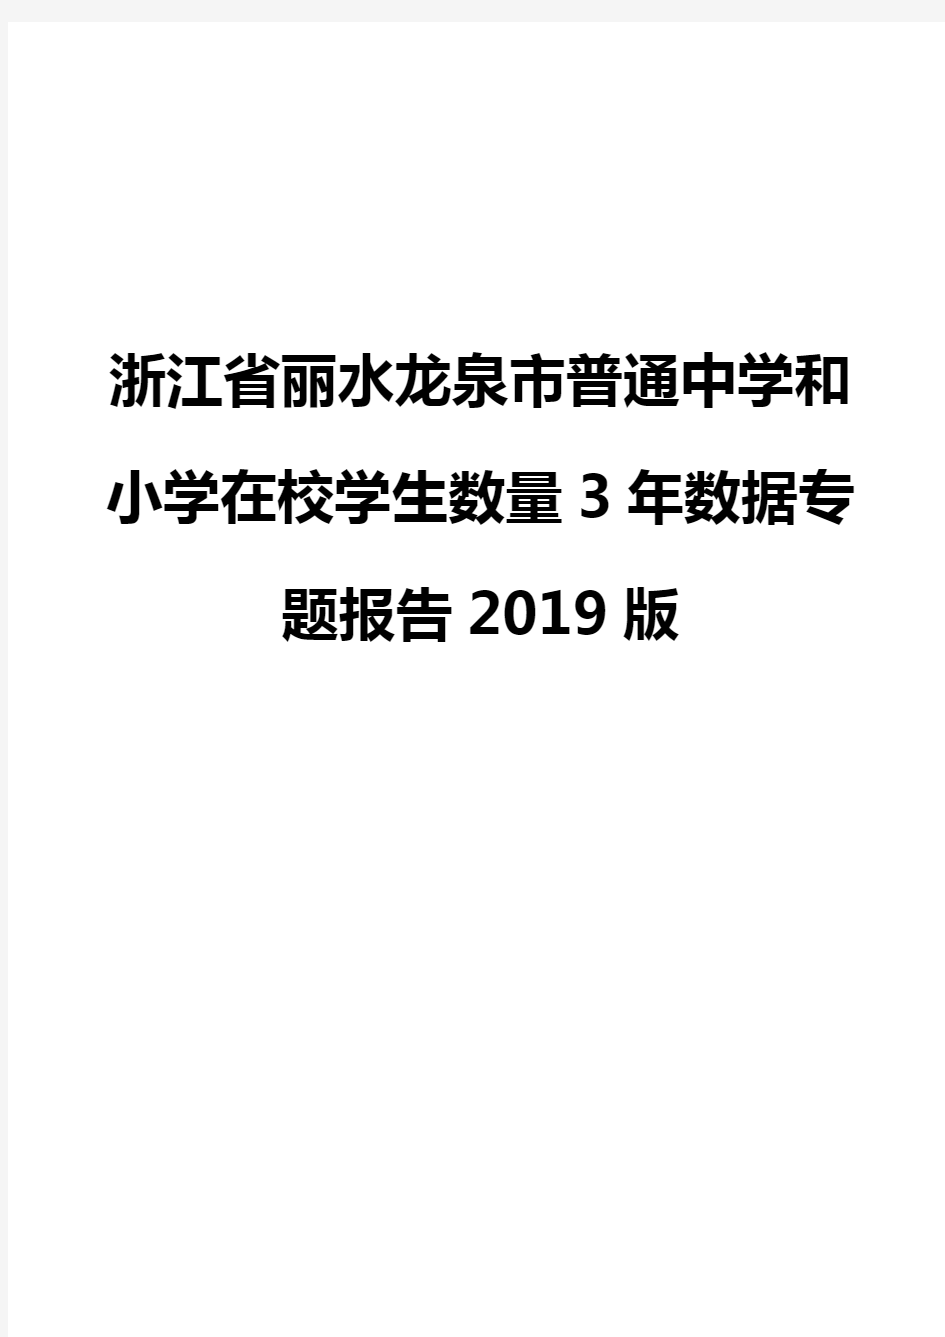 浙江省丽水龙泉市普通中学和小学在校学生数量3年数据专题报告2019版